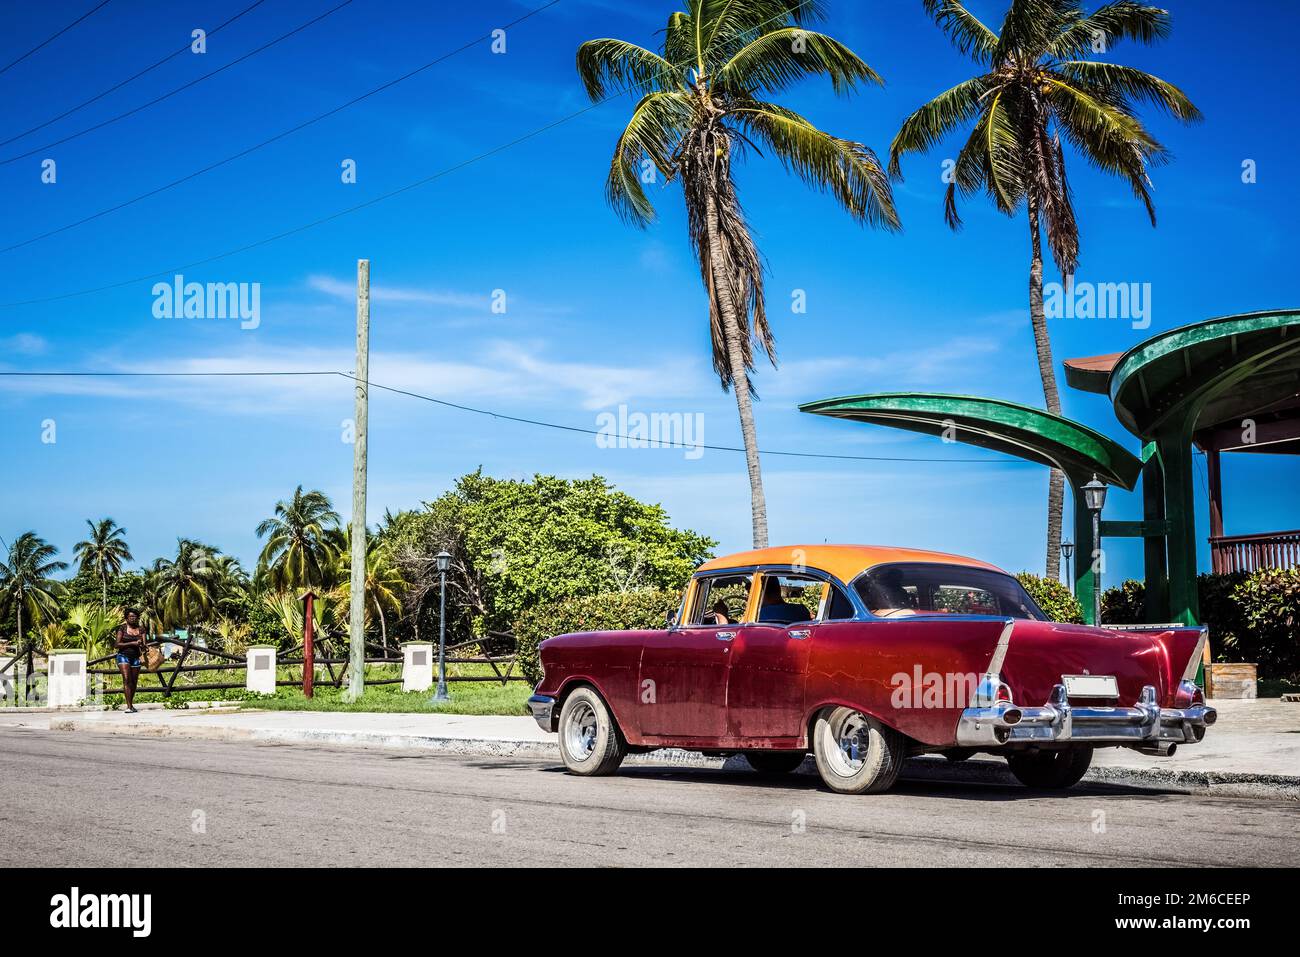 HDR - parcheggiata auto d'epoca rossa americana con un tetto arancione vicino alla spiaggia di Varadero Cuba Foto Stock